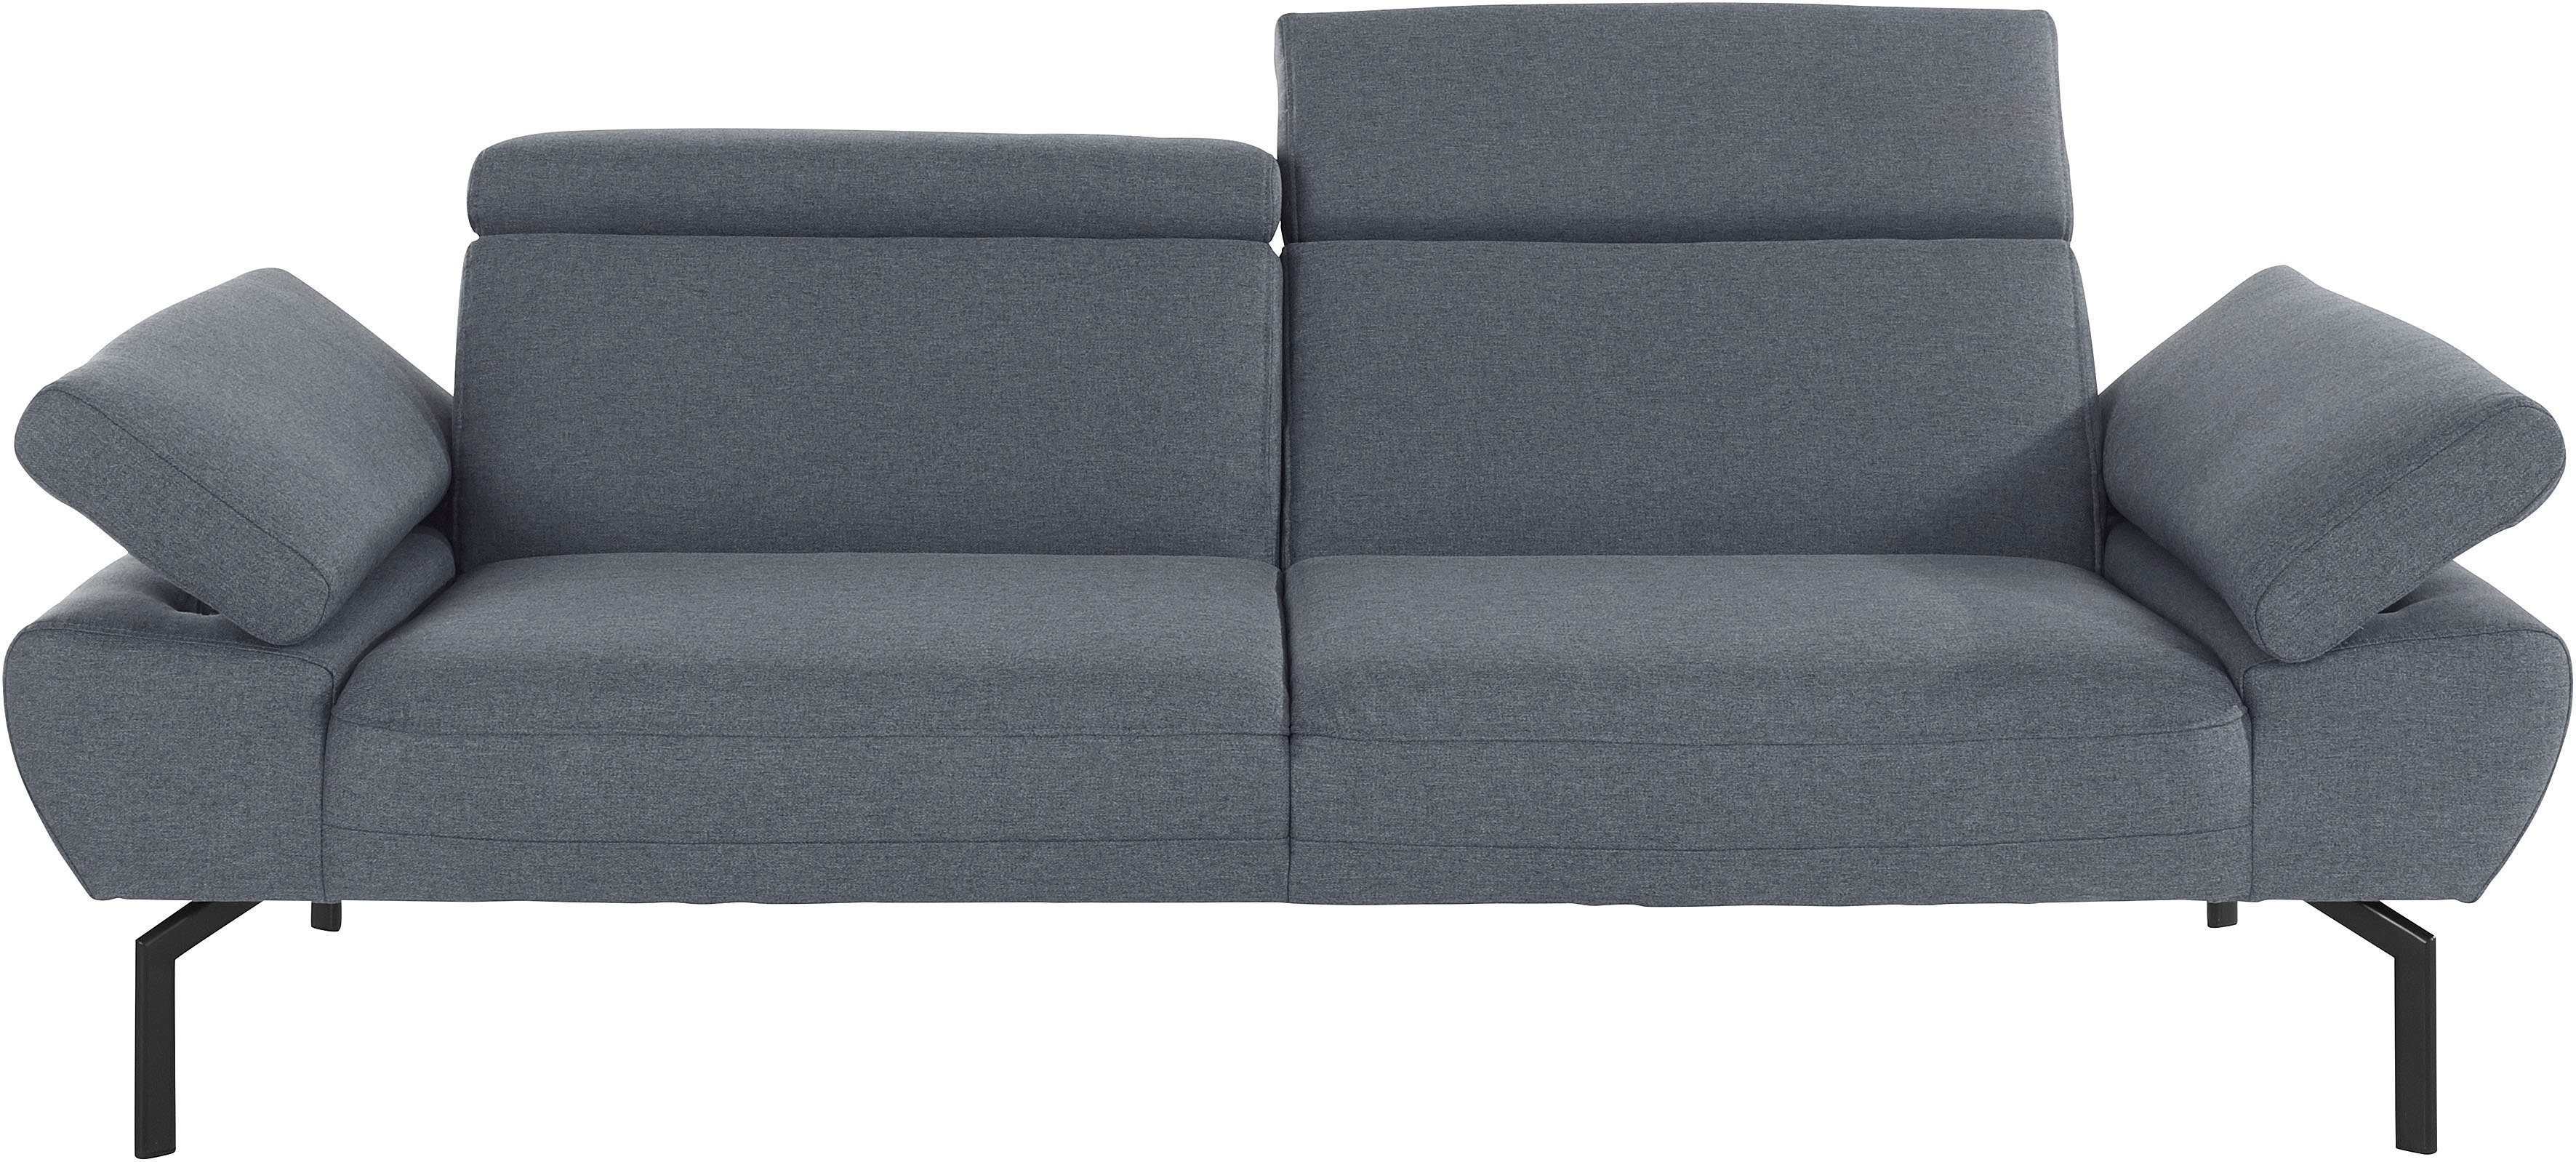 Luxus, mit 2,5-Sitzer of Trapino wahlweise Places Style Rückenverstellung, Lederoptik in Luxus-Microfaser